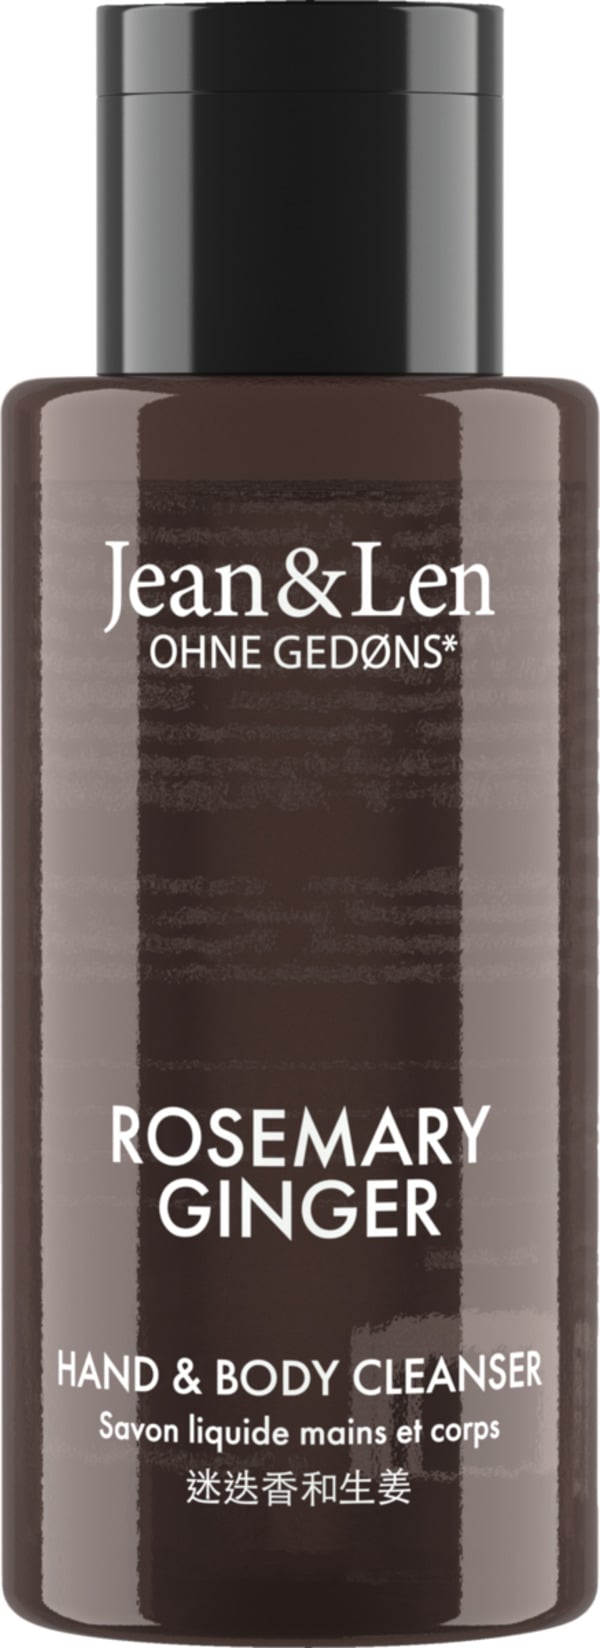 Bild 1 von Jean&Len Mini Hand & Body Cleanser Rosemary Ginger